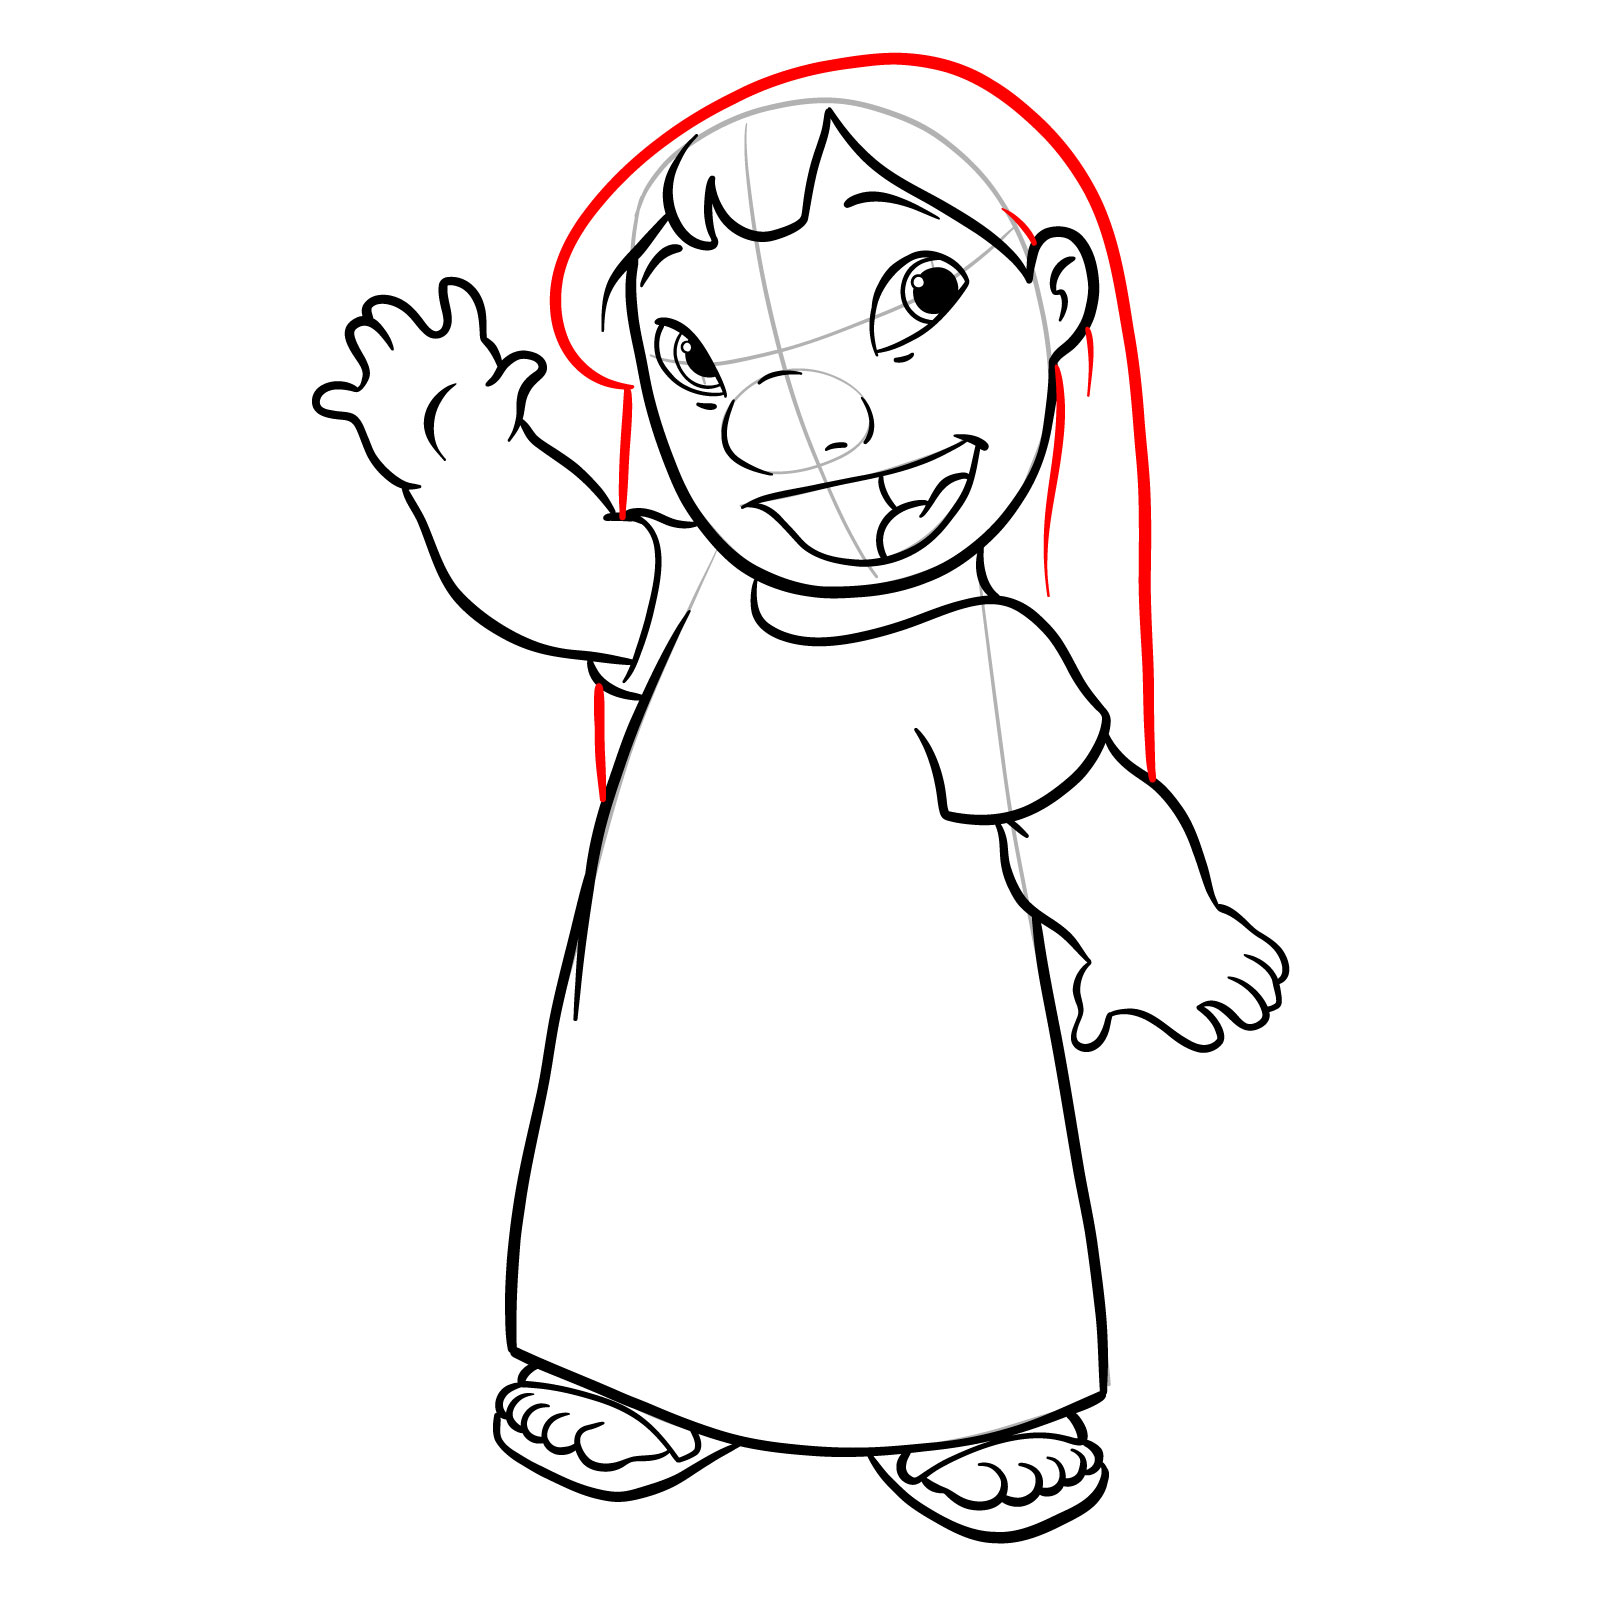 How to draw Lilo from Lilo & Stitch - step 22